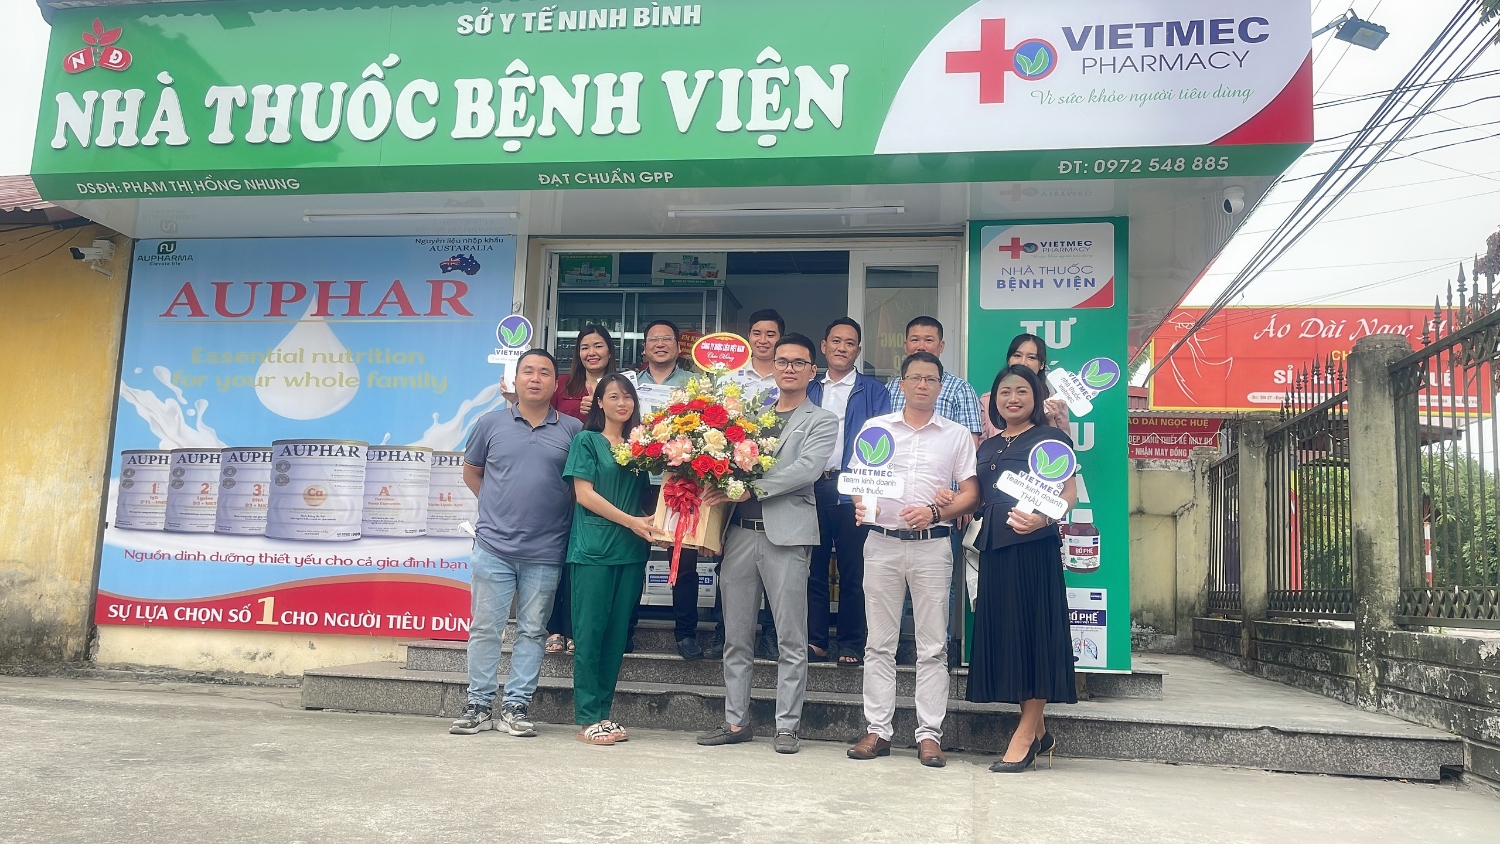 Khai trương nhà thuốc VIETMEC liên kết với Bệnh viện huyện Yên Mô, tỉnh Ninh Bình